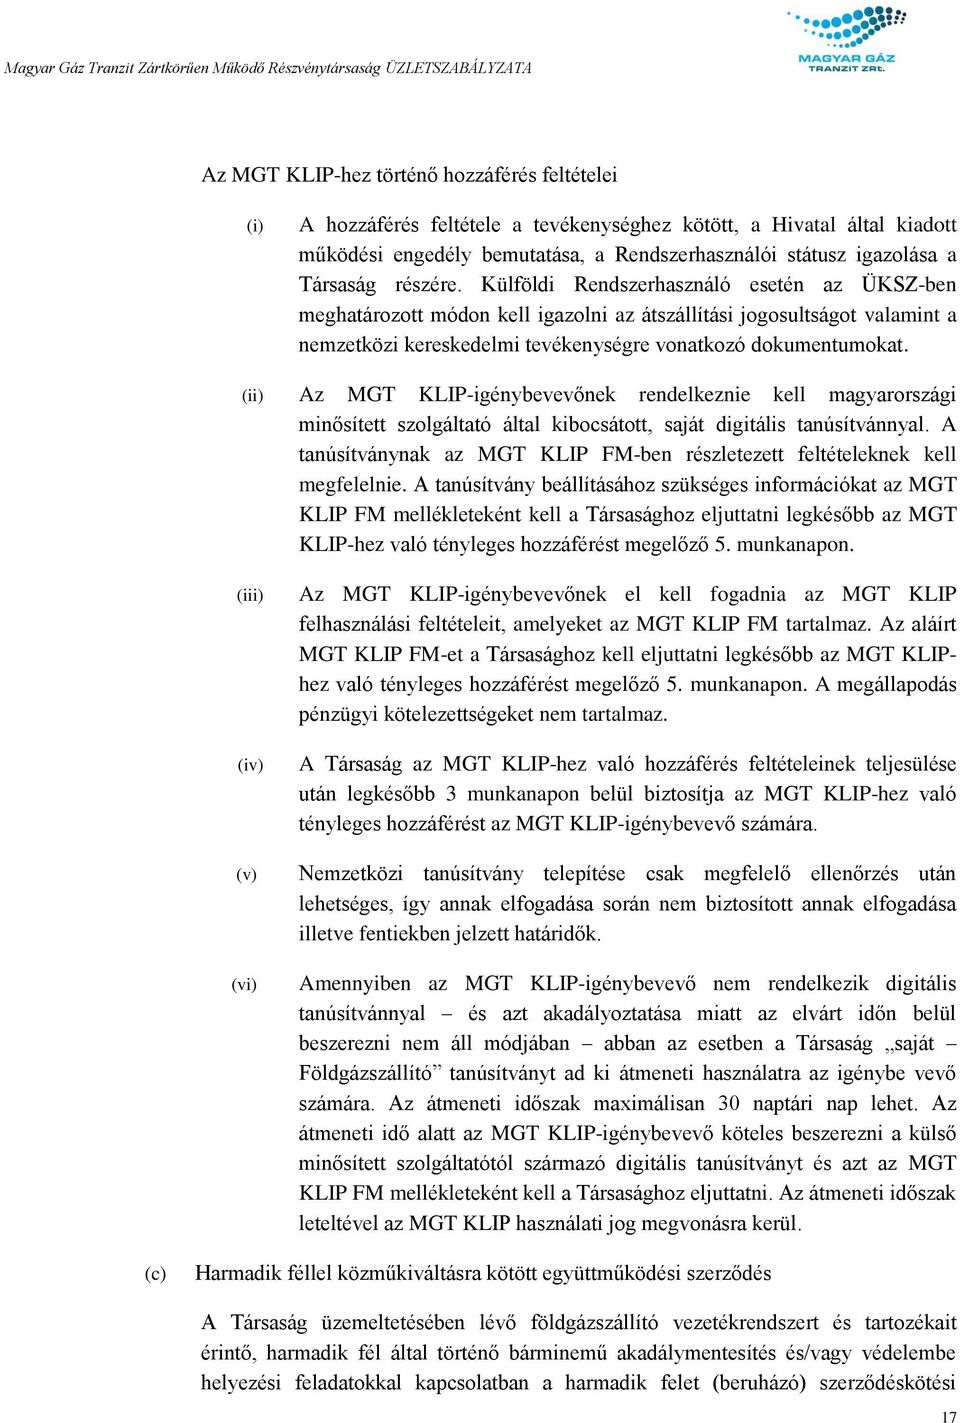 (ii) Az MGT KLIP-igénybevevőnek rendelkeznie kell magyarországi minősített szolgáltató által kibocsátott, saját digitális tanúsítvánnyal.